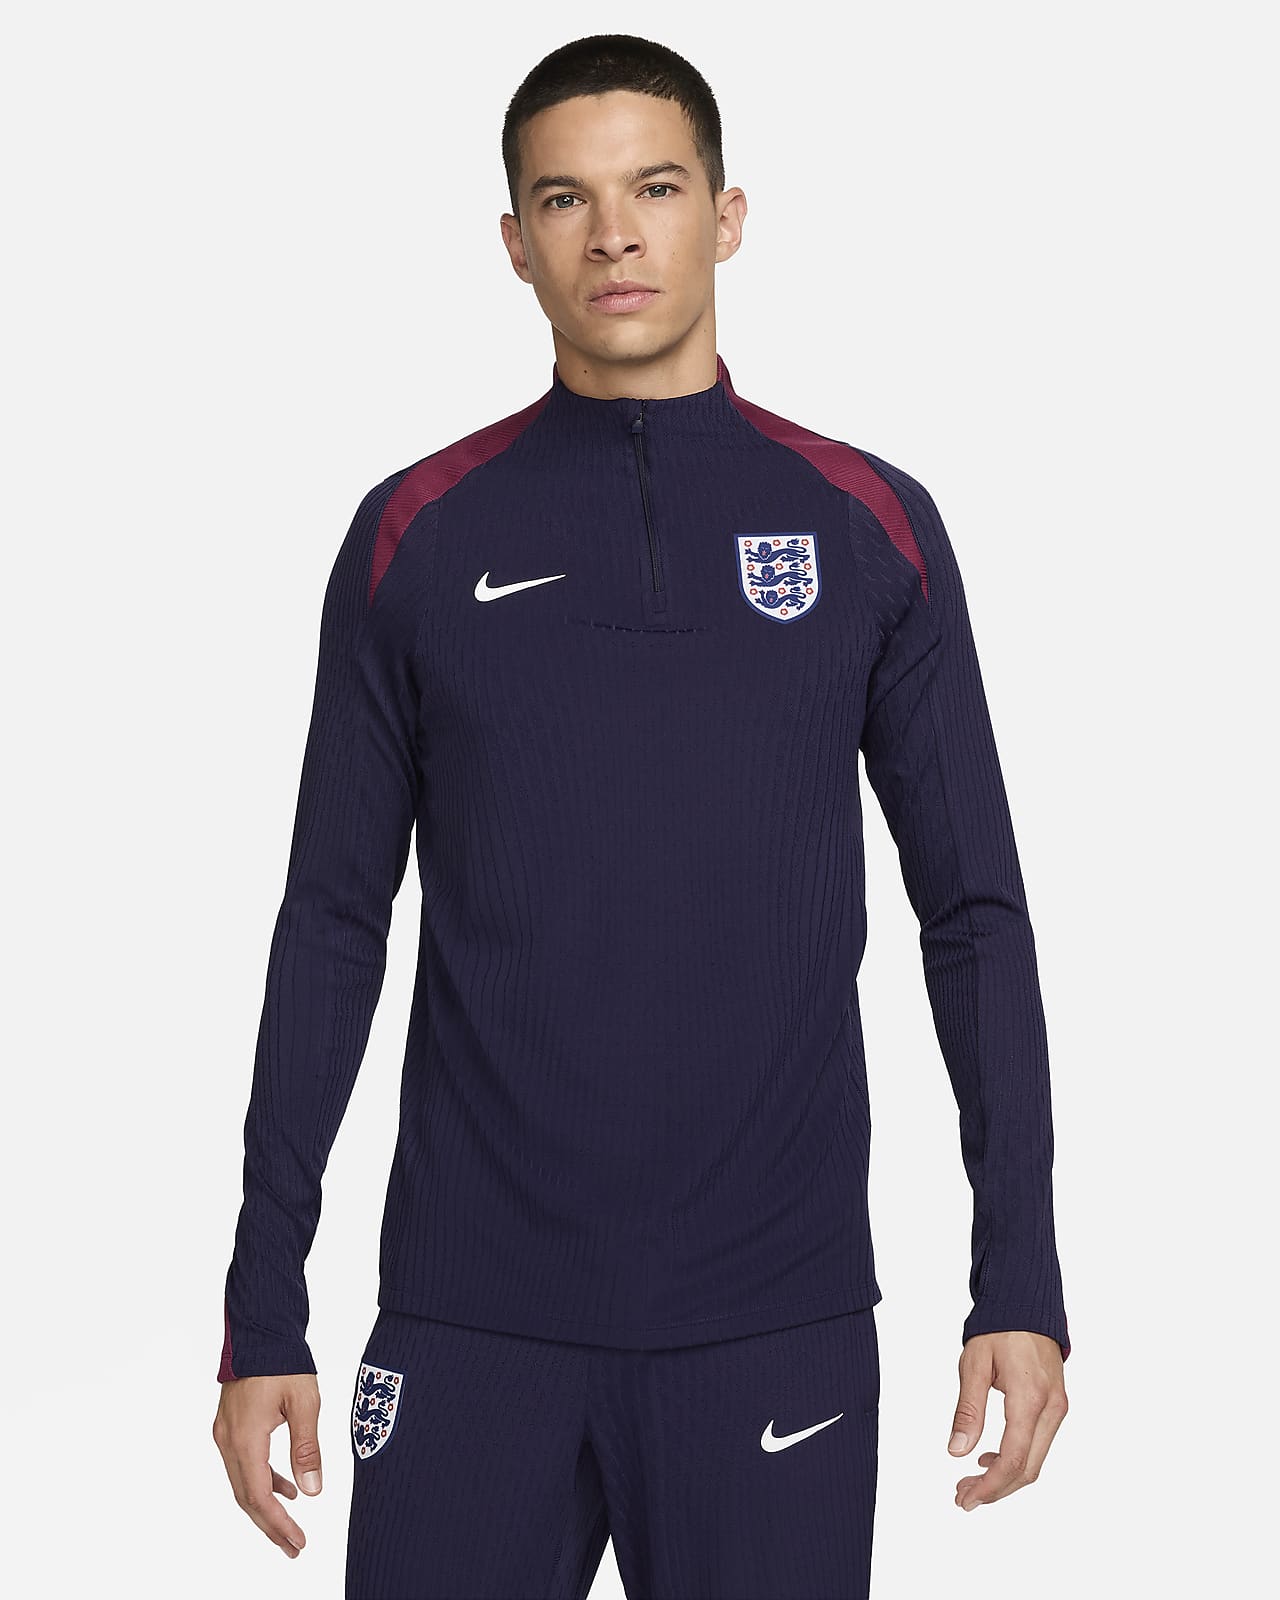 Engeland Strike Elite Nike Dri-FIT ADV knit voetbaltrainingstop voor heren